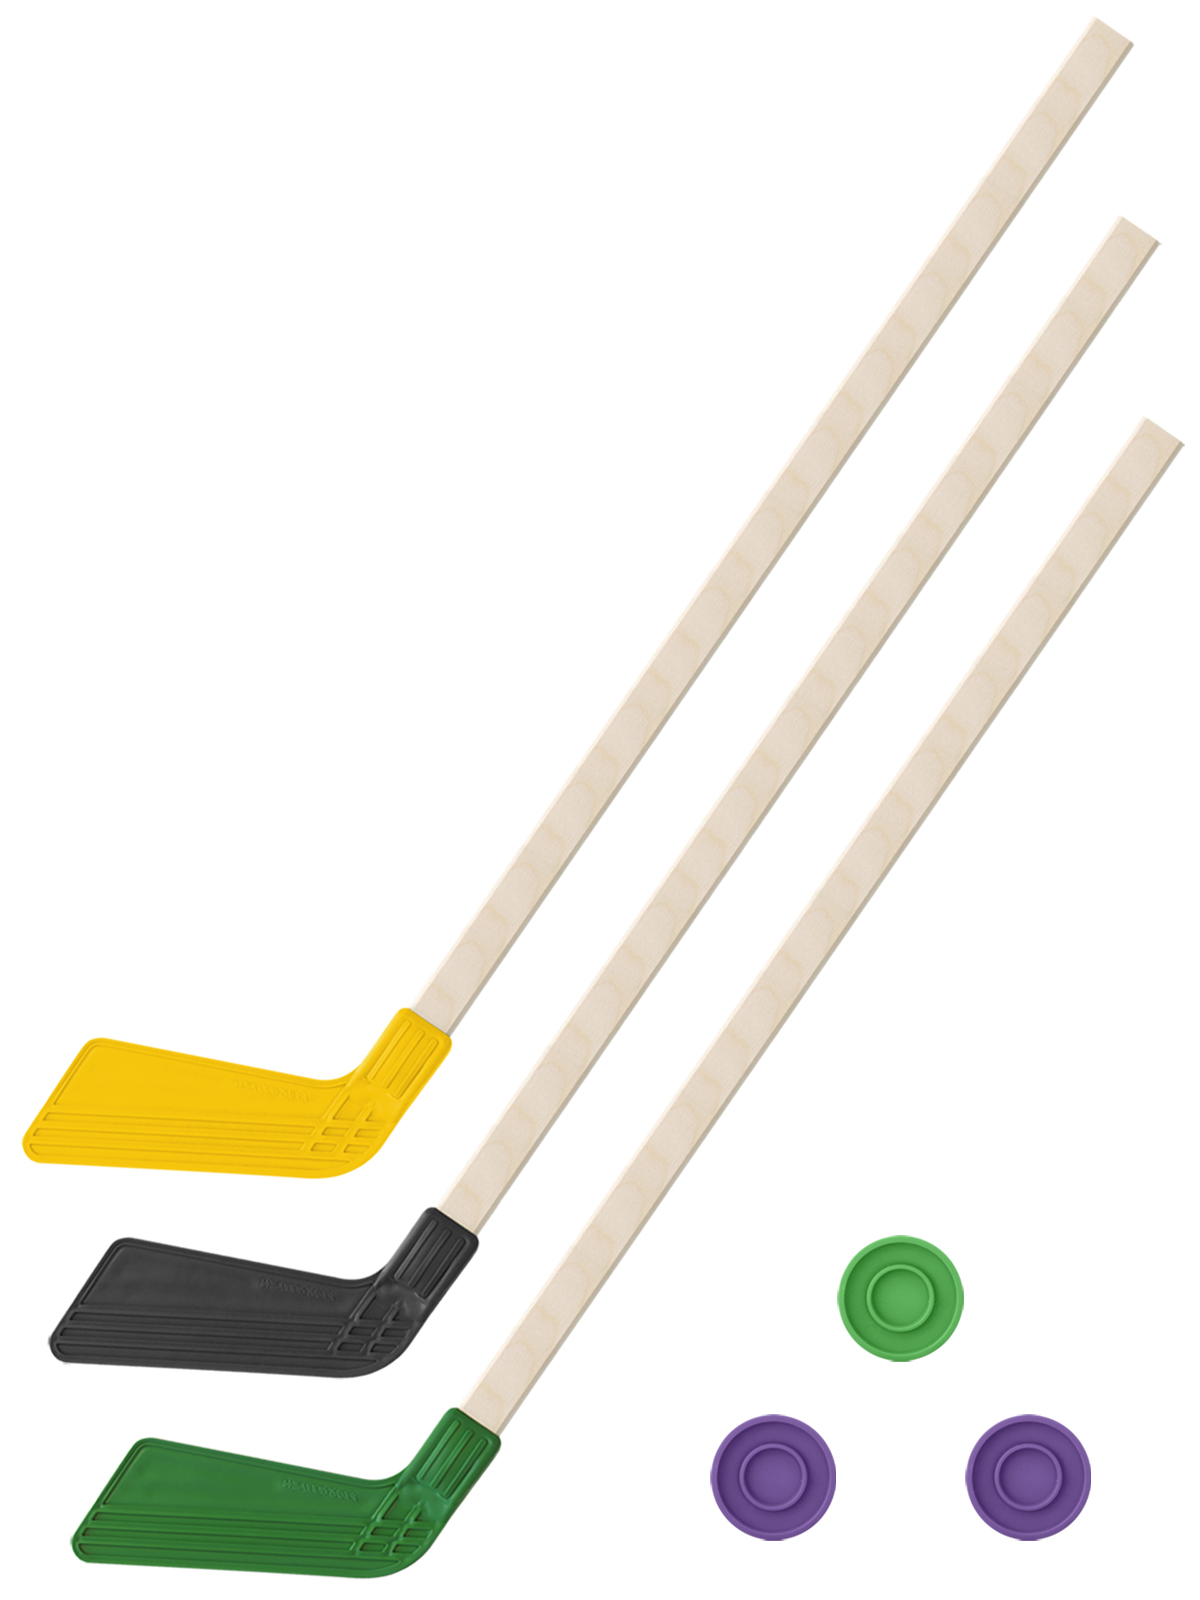 Детский хоккейный набор Задира-плюс 3 в 1 Клюшка хоккейная 80см (жел,черн,зел) + 3 шайбы детский хоккейный набор задира плюс 3 в 1 клюшка хоккейная 80см жёл черн син 3 шайбы